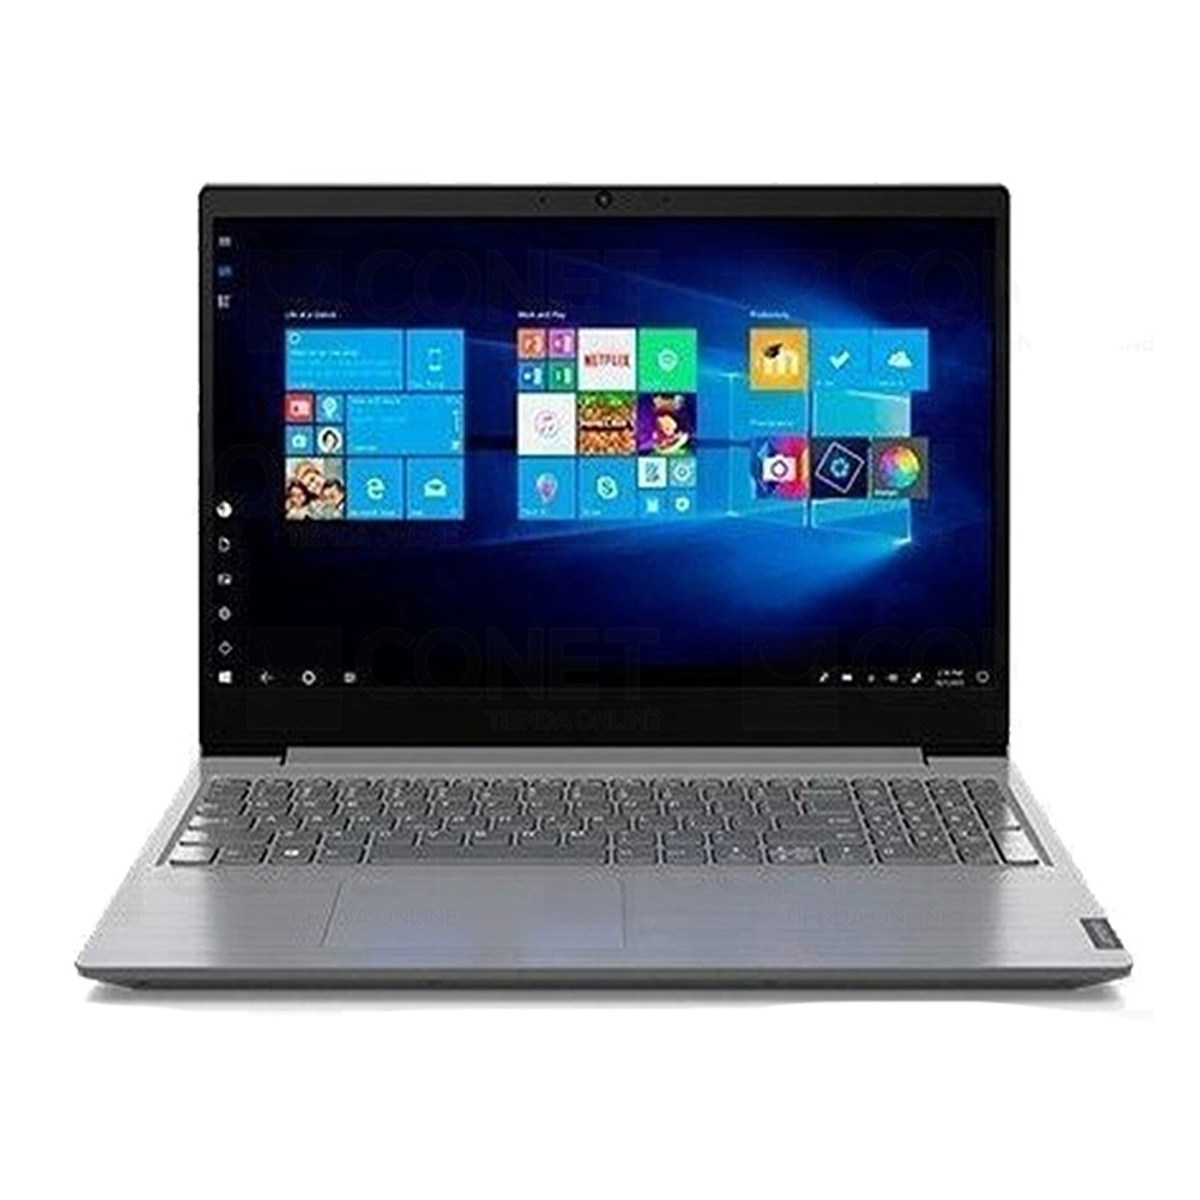 Lenovo - Ordenador portátil - 14 - Intel Core i7 - 8 GB - 1 TB - Windows  10 Pro - Español